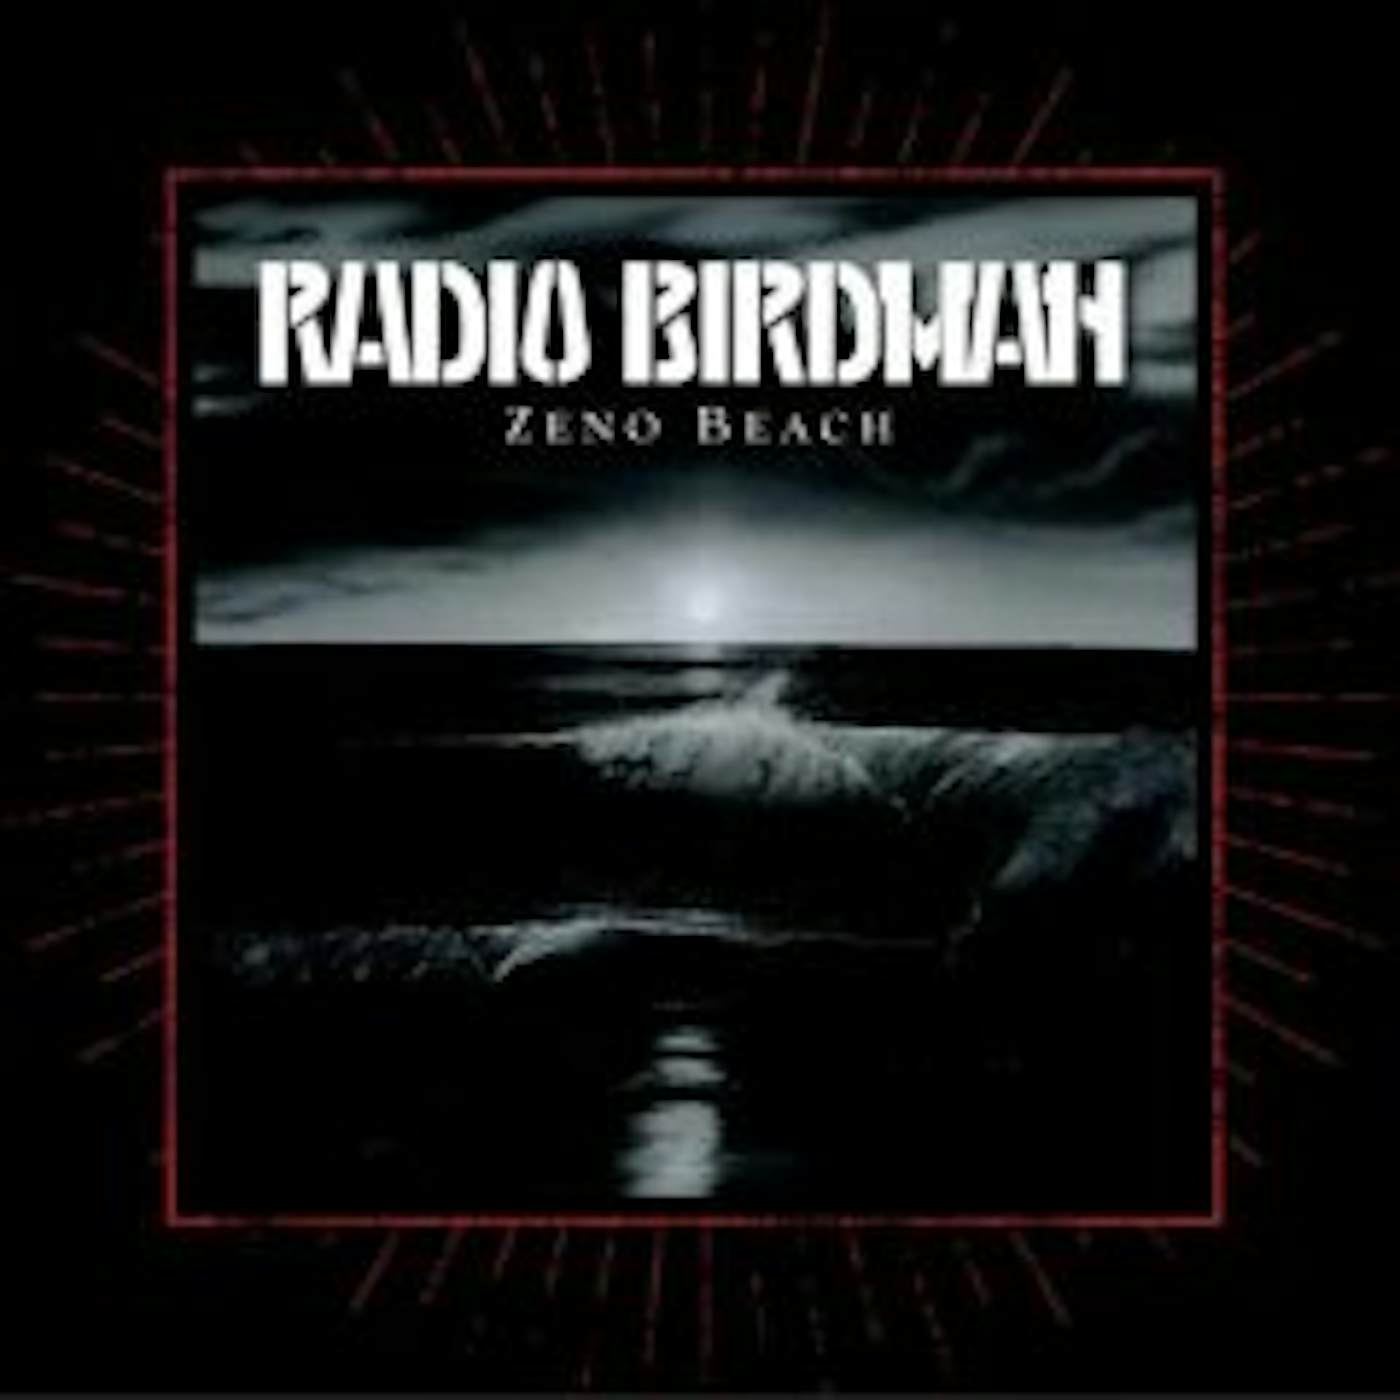 Radio Birdman ZENO BEACH CD